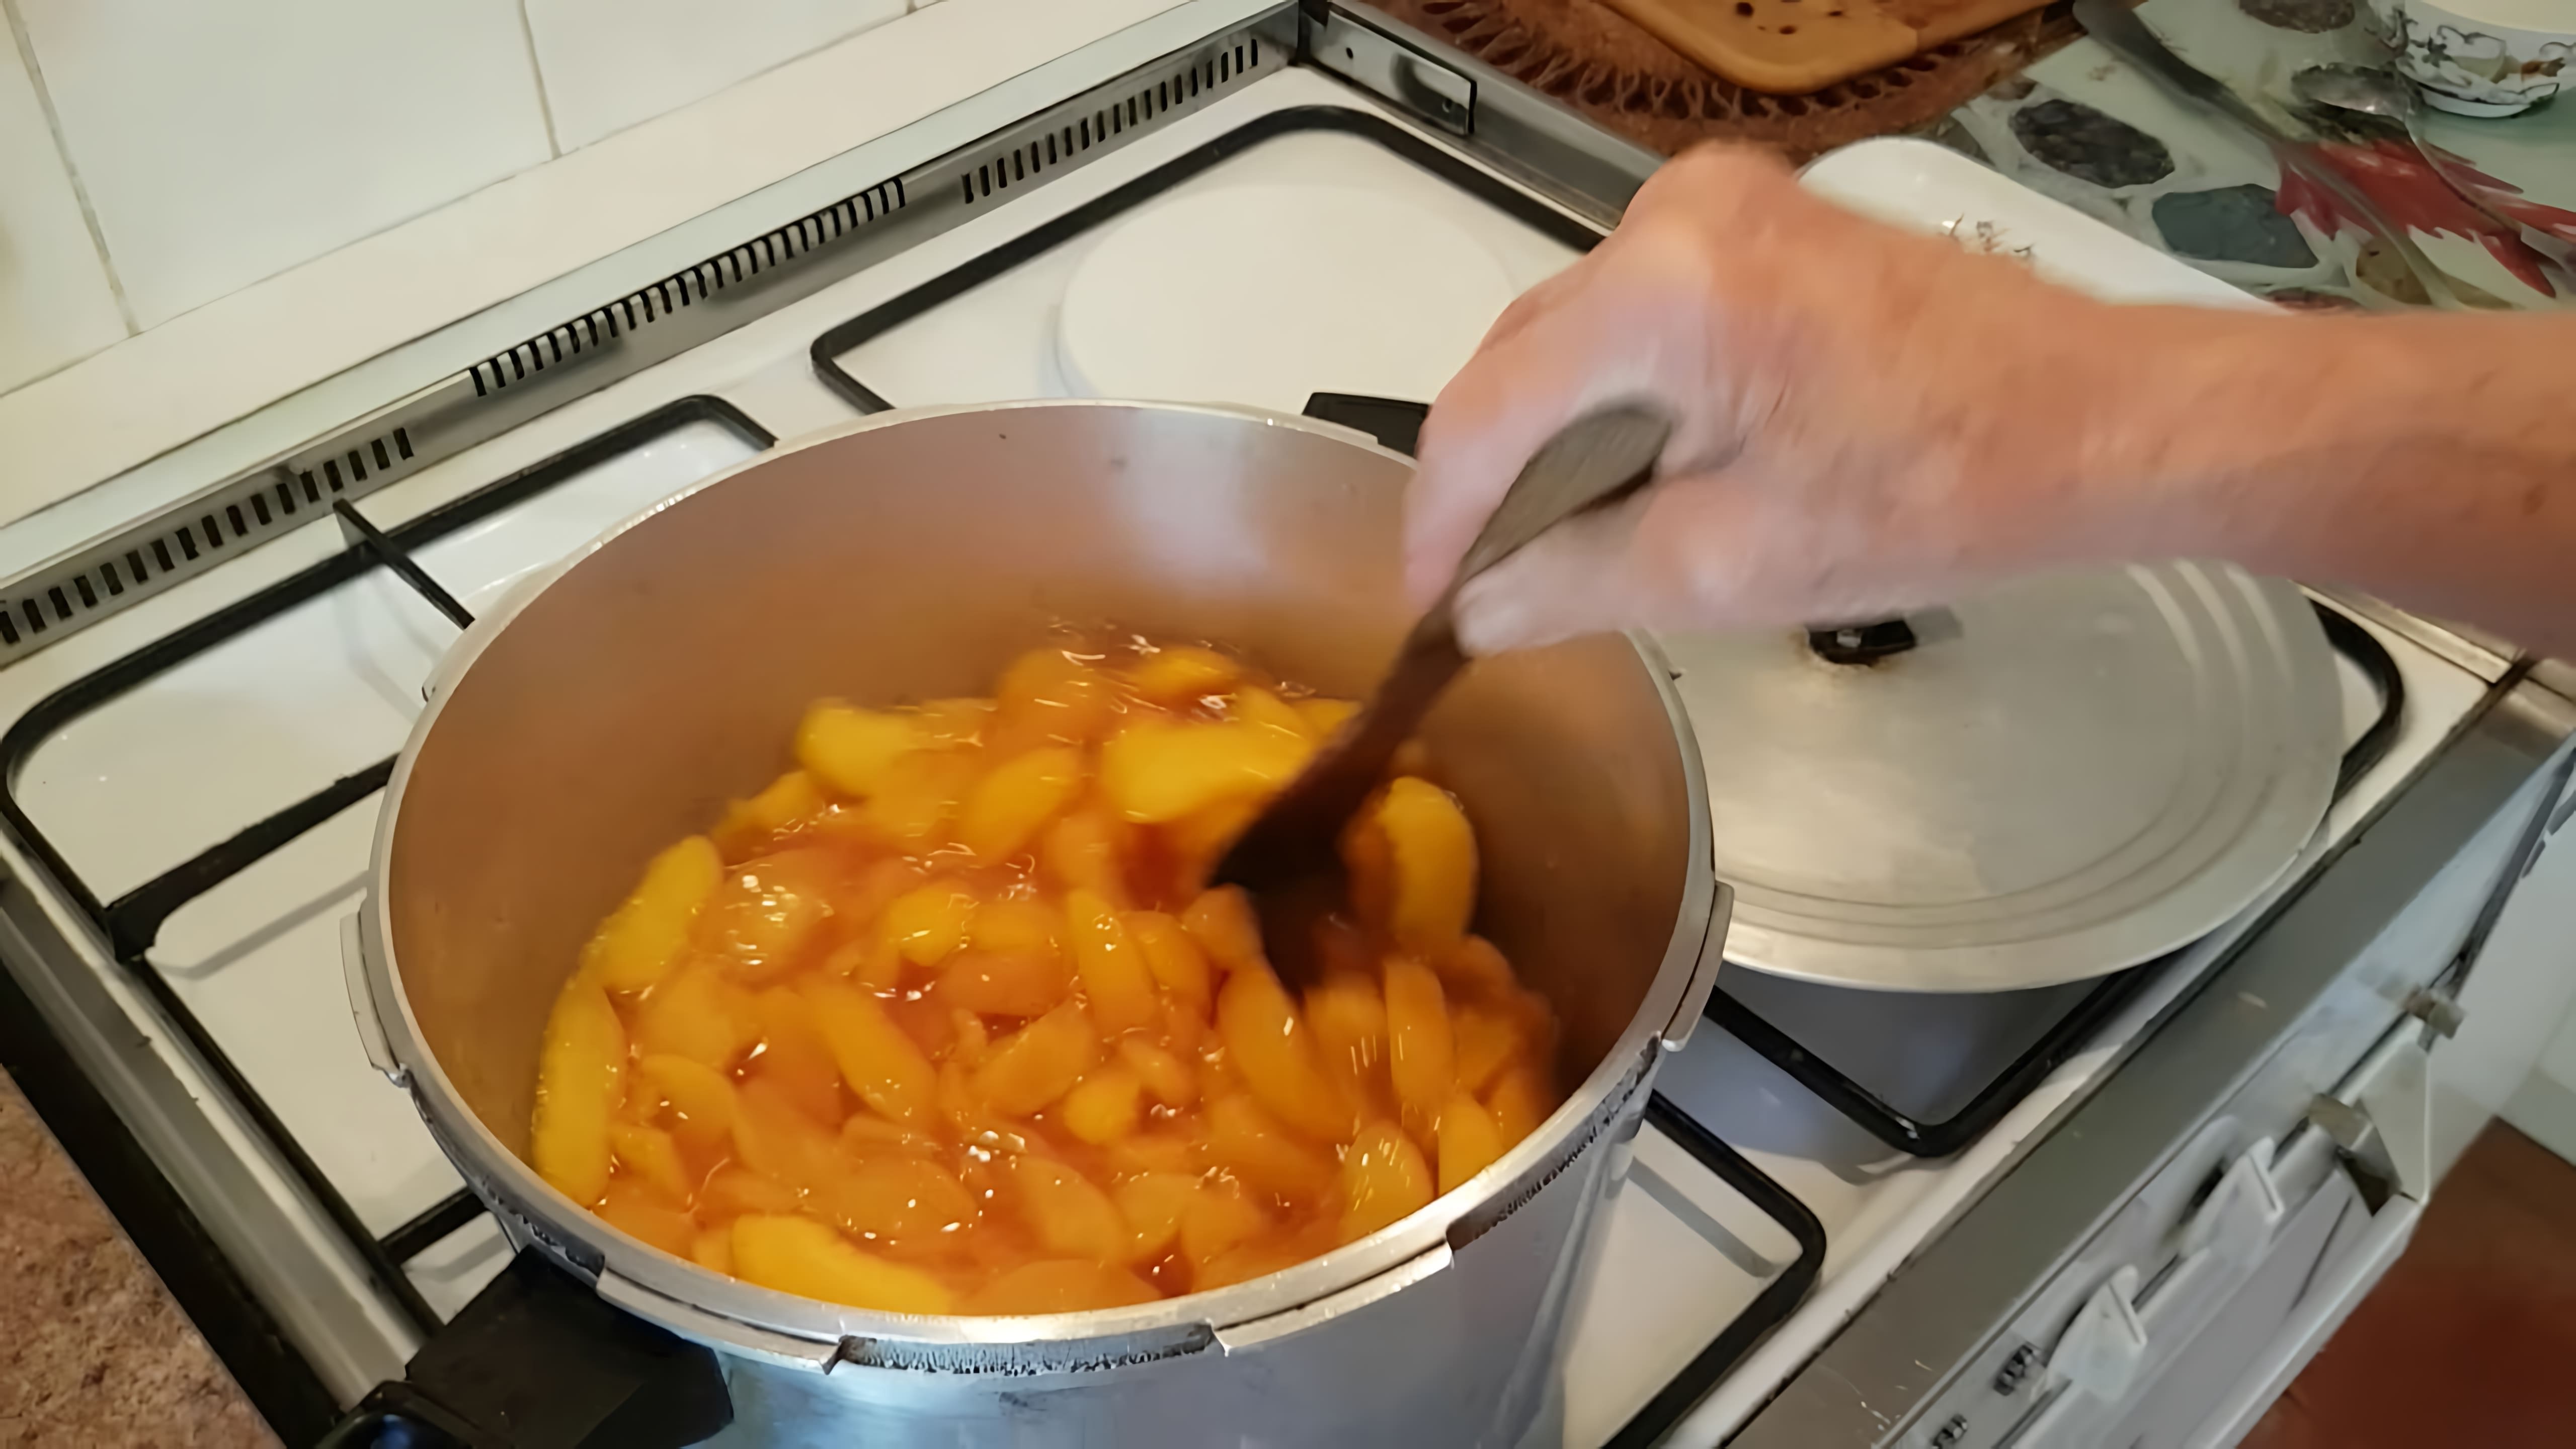 В этом видео демонстрируется процесс приготовления французского конфитюра из персиков